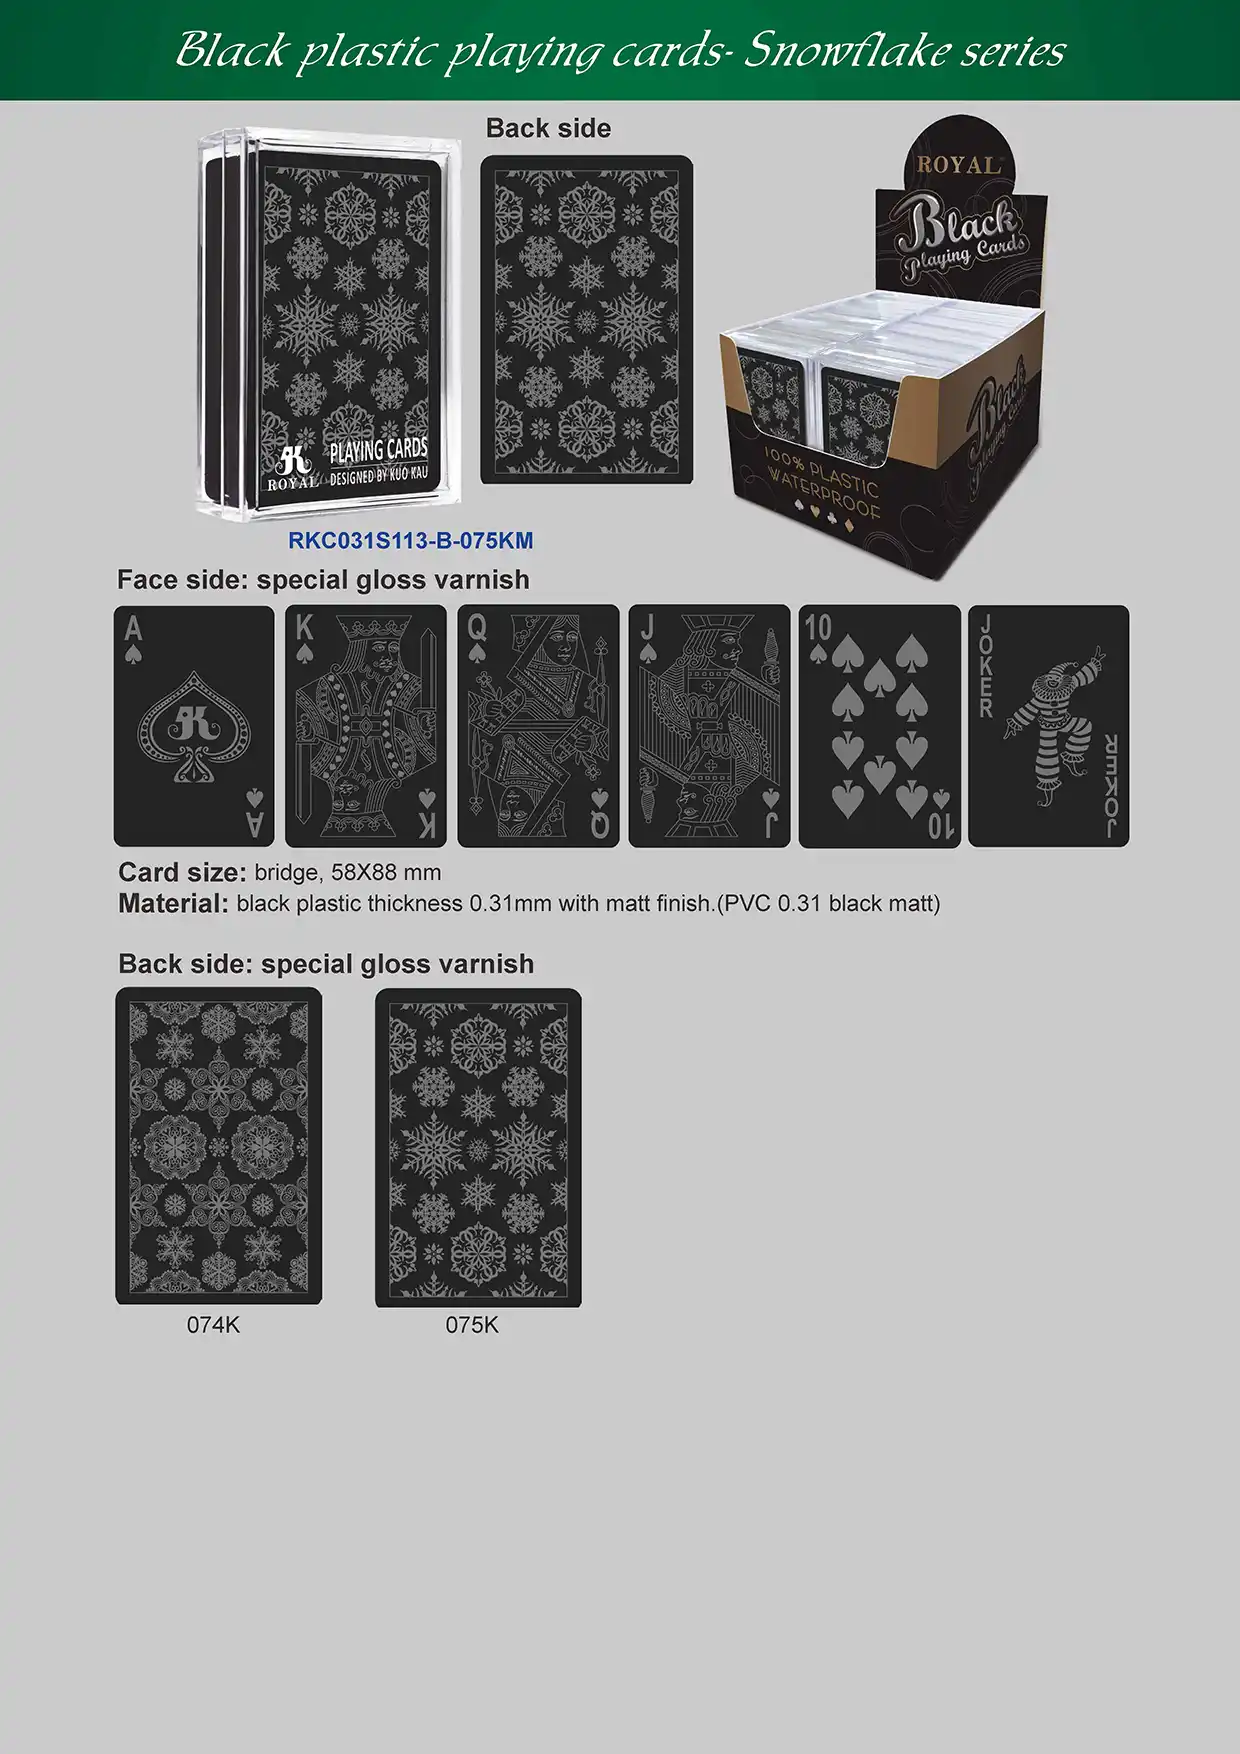 검정색 플라스틱 카드 놀이 - 눈송이 시리즈